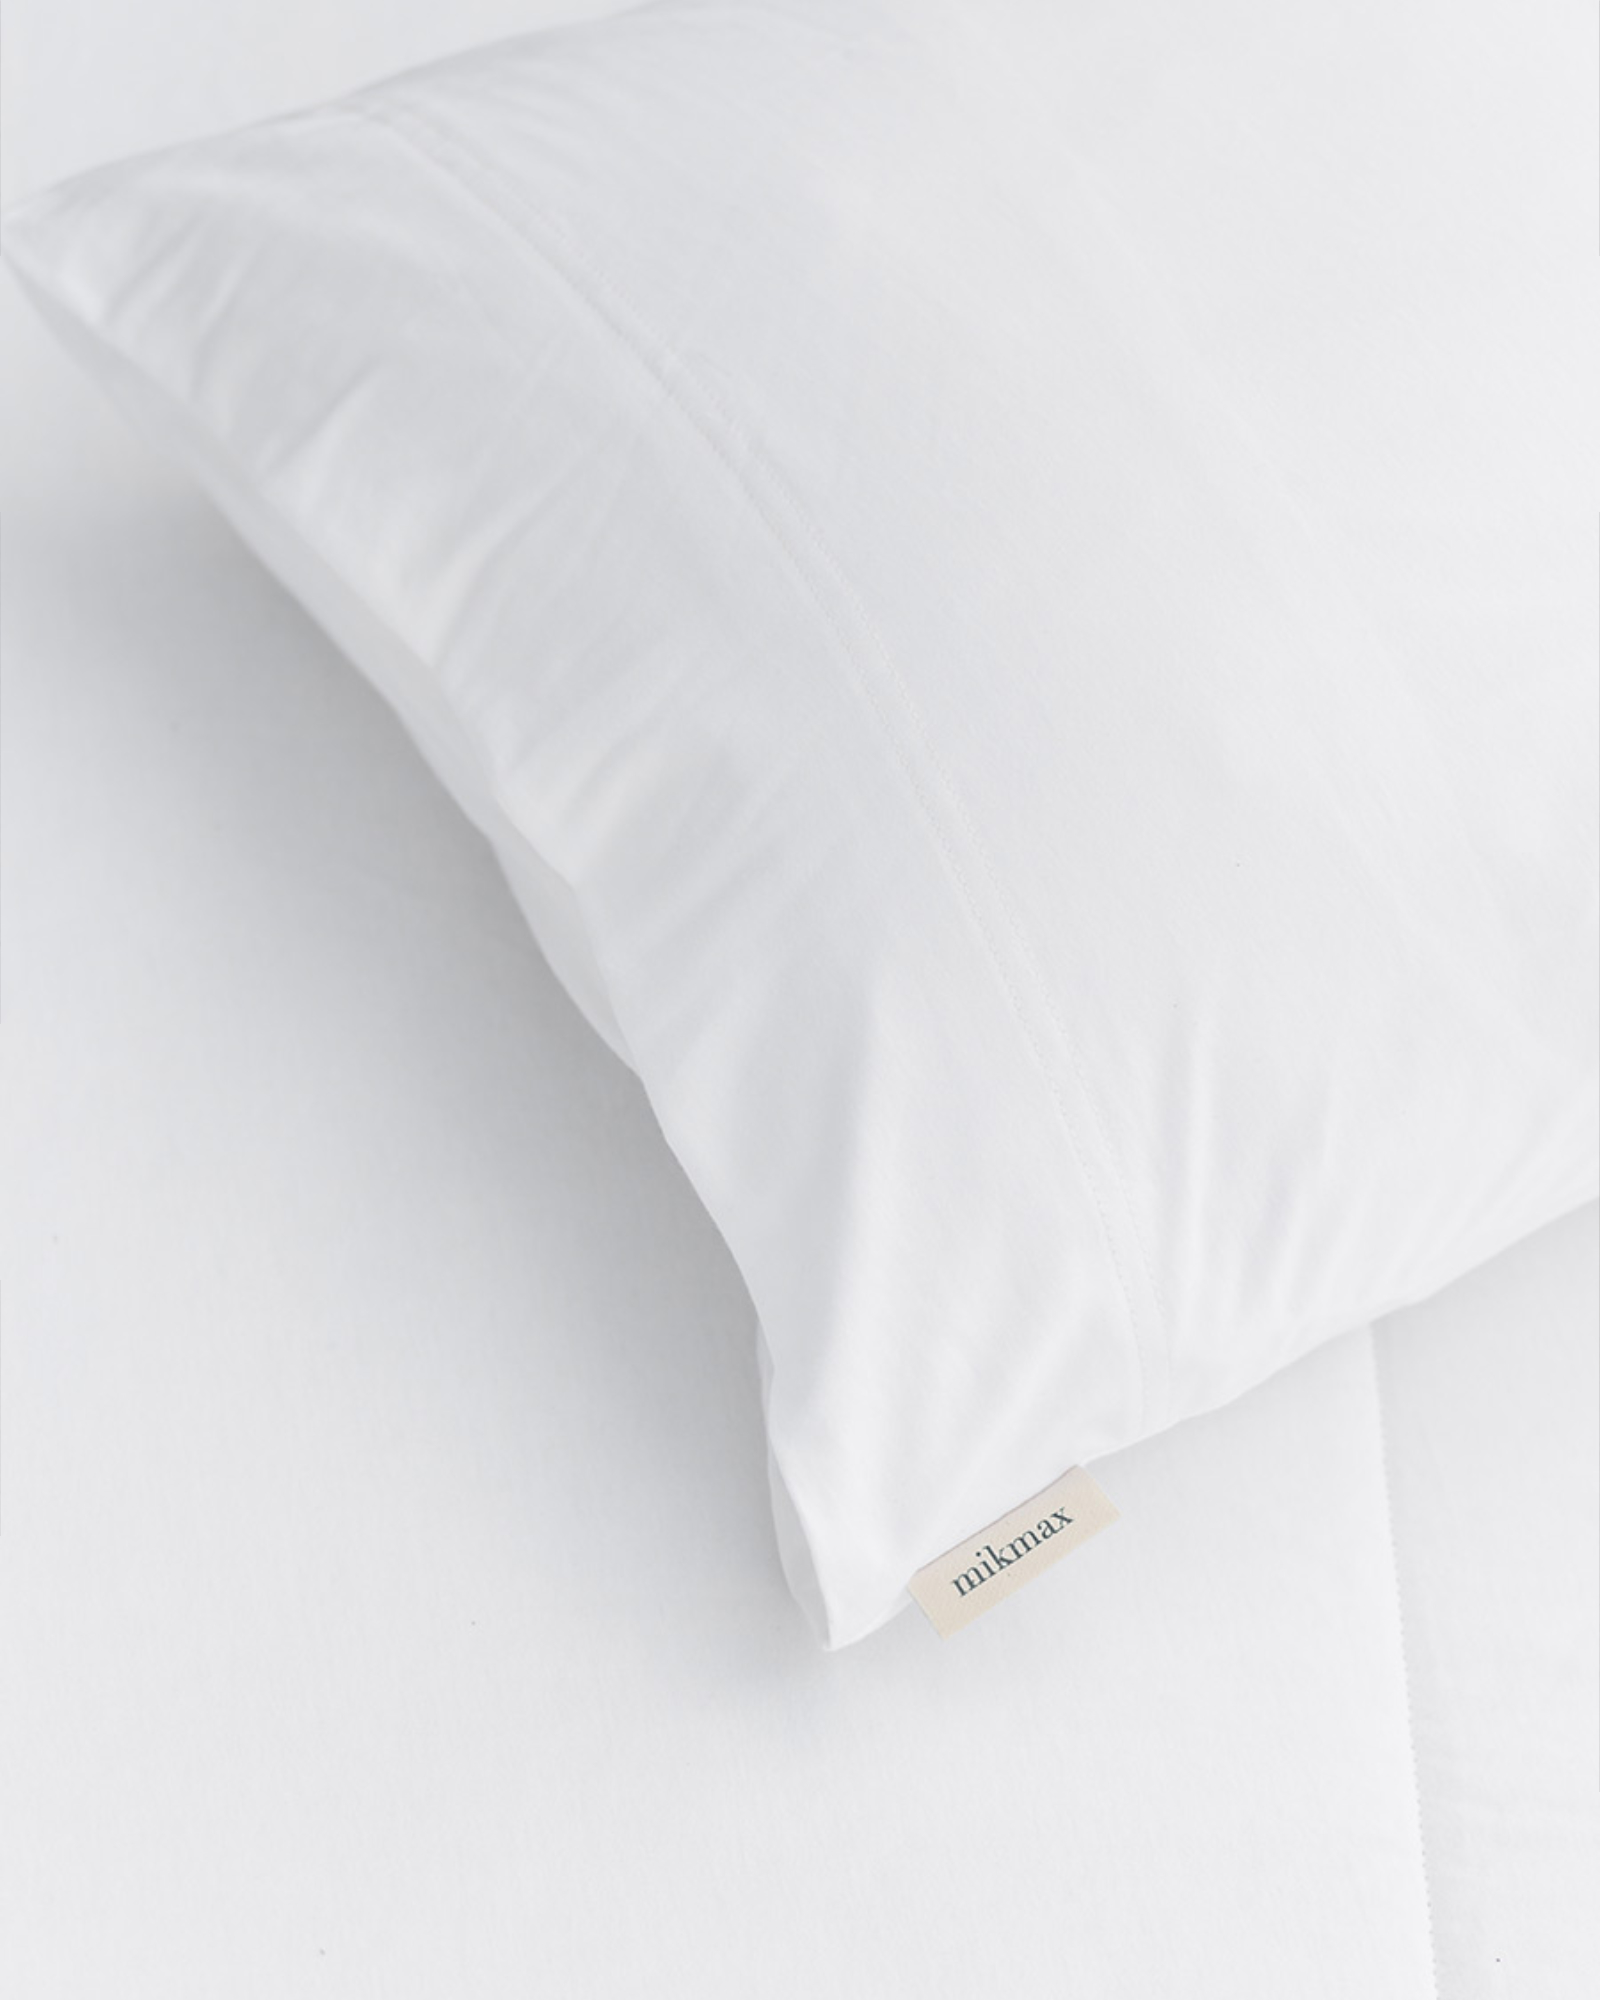 Mikmax - Bed linen set WHITE PLAIN - 140x200 cm + 1 sloop 65x65 cm - White